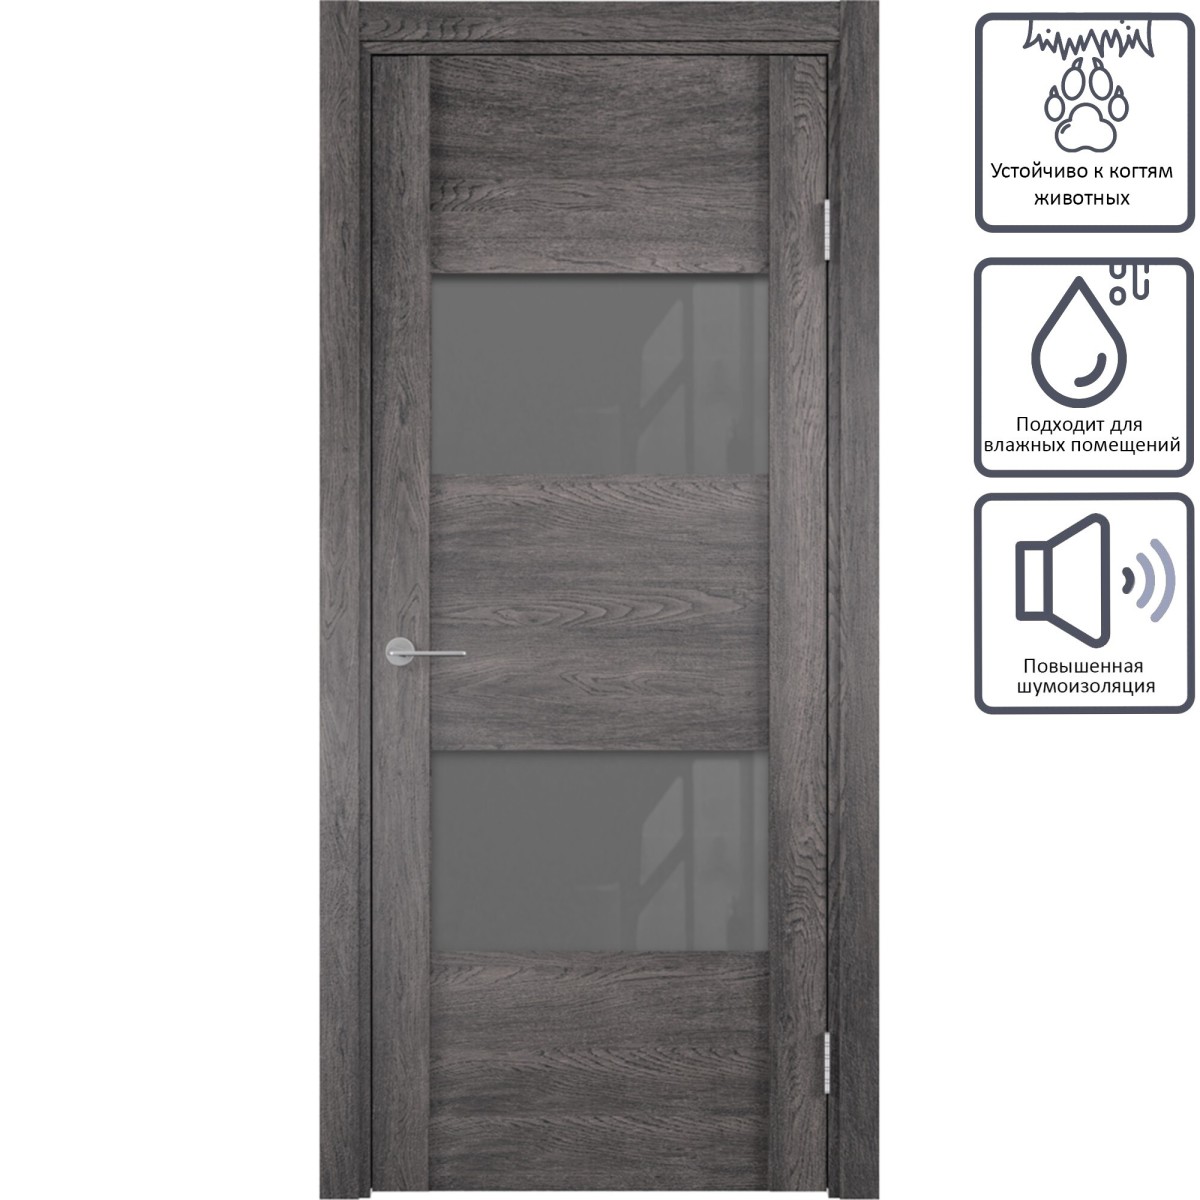 Дверь межкомнатная остеклённая с замком в комплекте Квадро 60x200 см ПВХ цвет серый